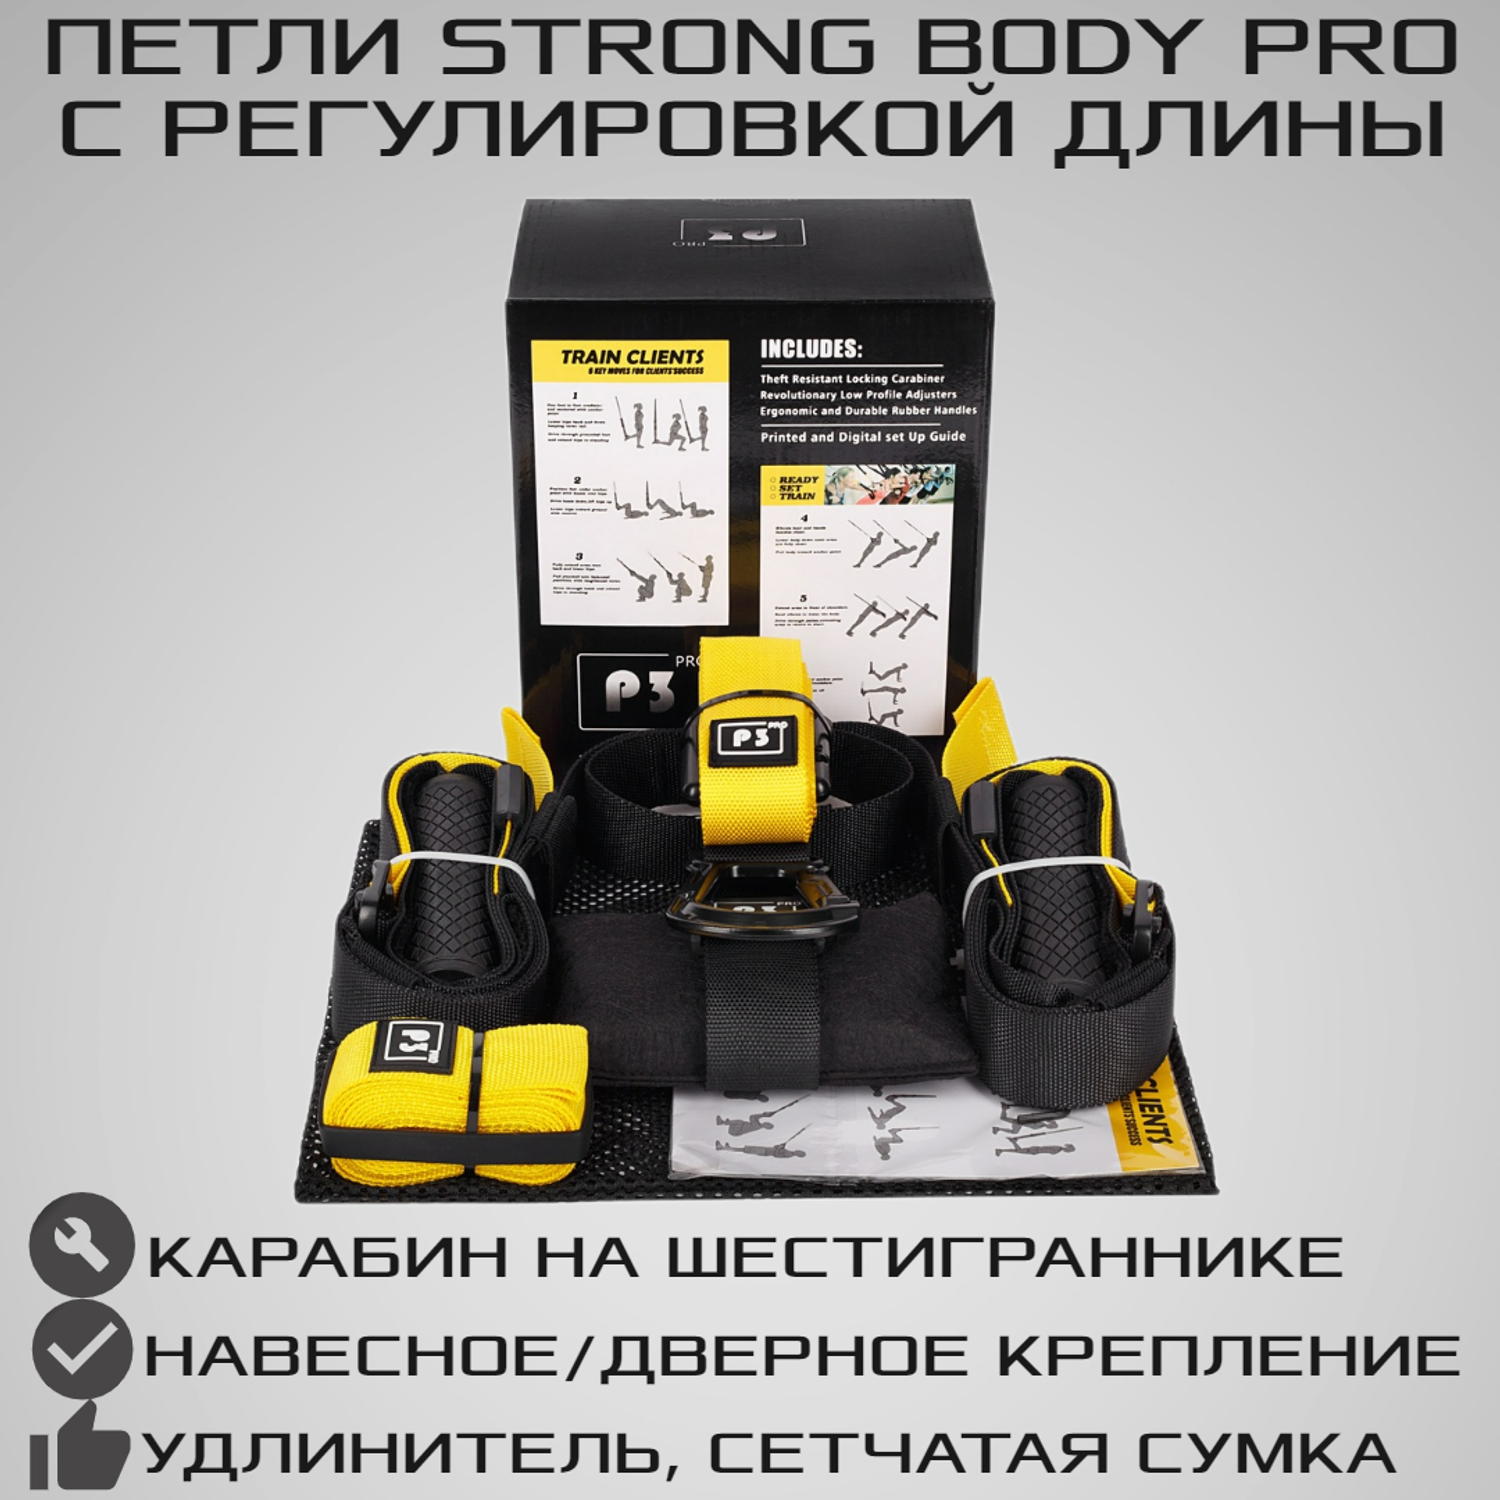 Тренировочные петли STRONG BODY P3 Pro черно-желтые подвесные тренировочные петли для фитнеса - фото 1